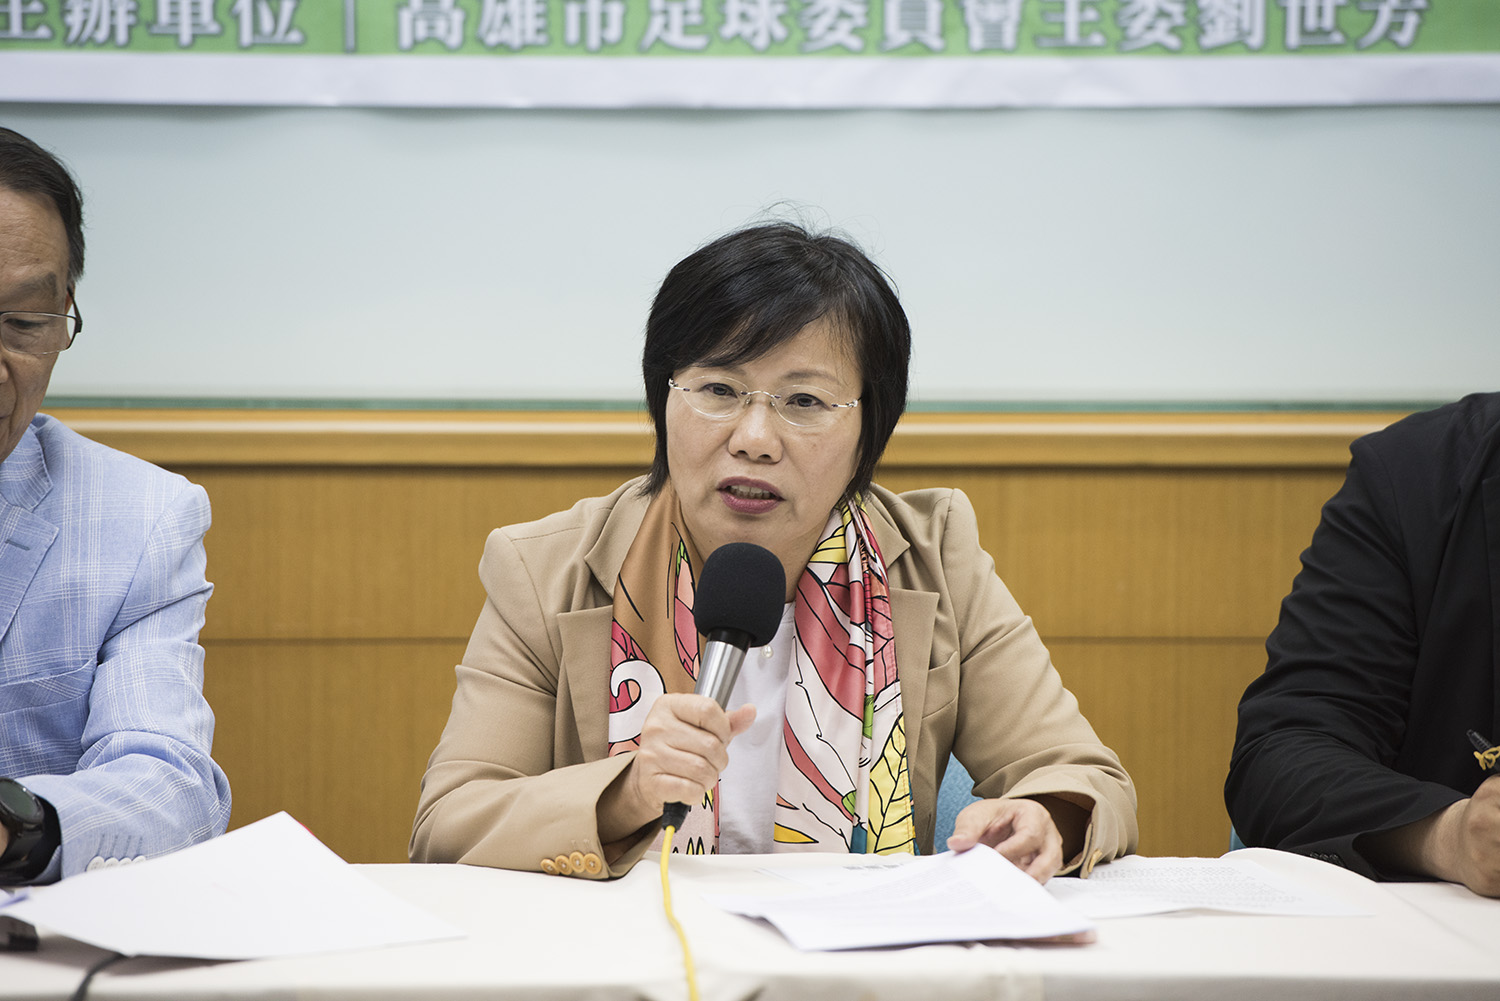 韓國瑜蓋棉被說 高市綠營促性平會處置 | 芋傳媒 TaroNews